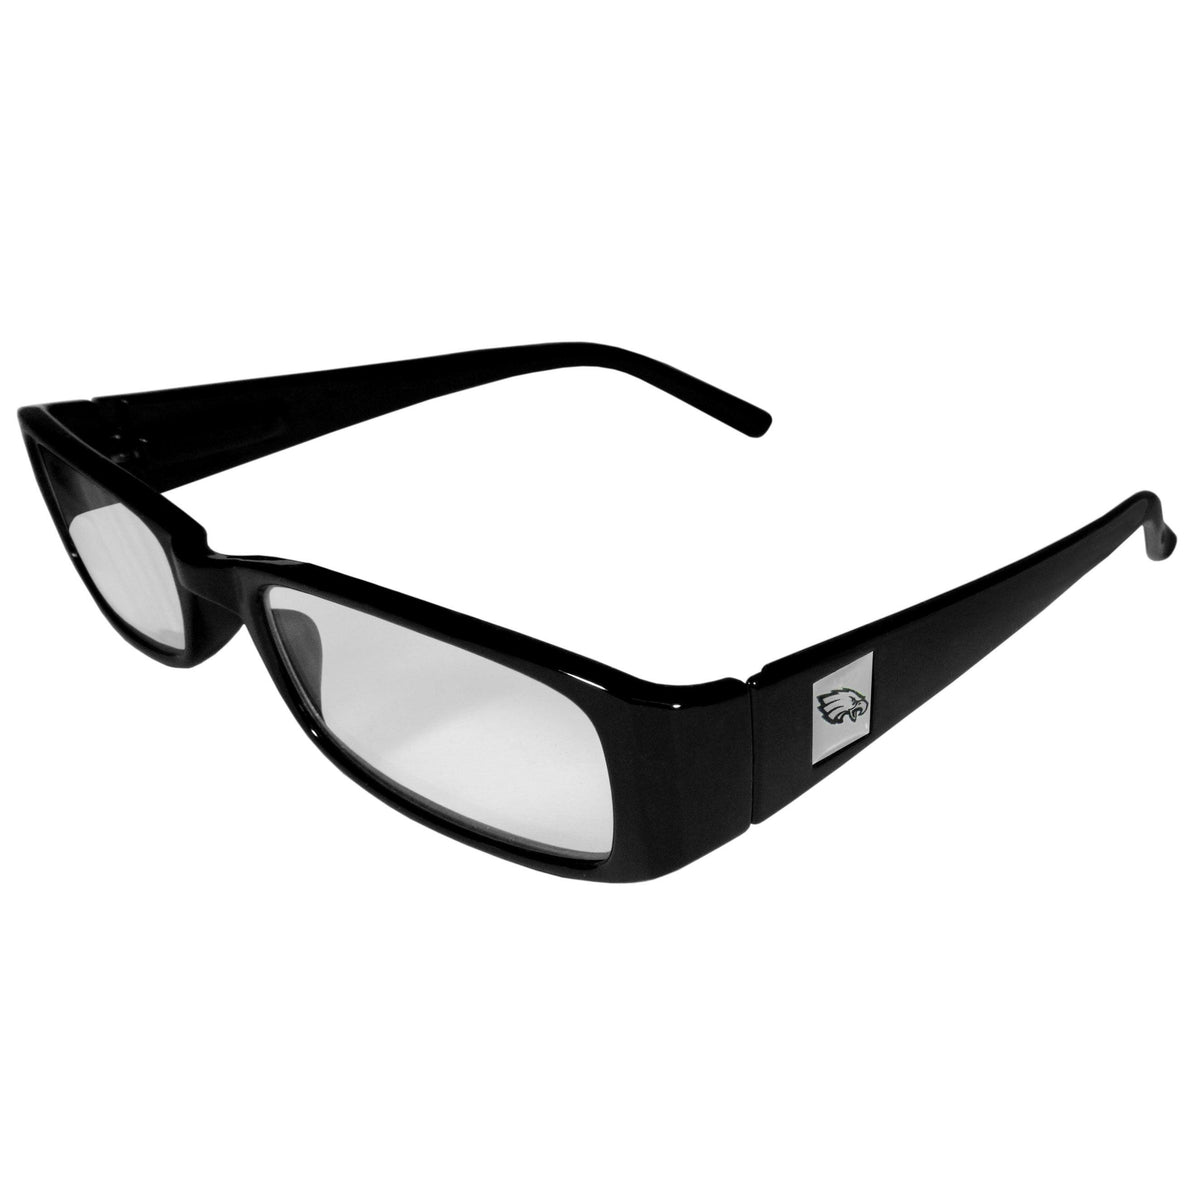 Philadelphia Eagles Black Reading Glasses +1.50 - Flyclothing LLC